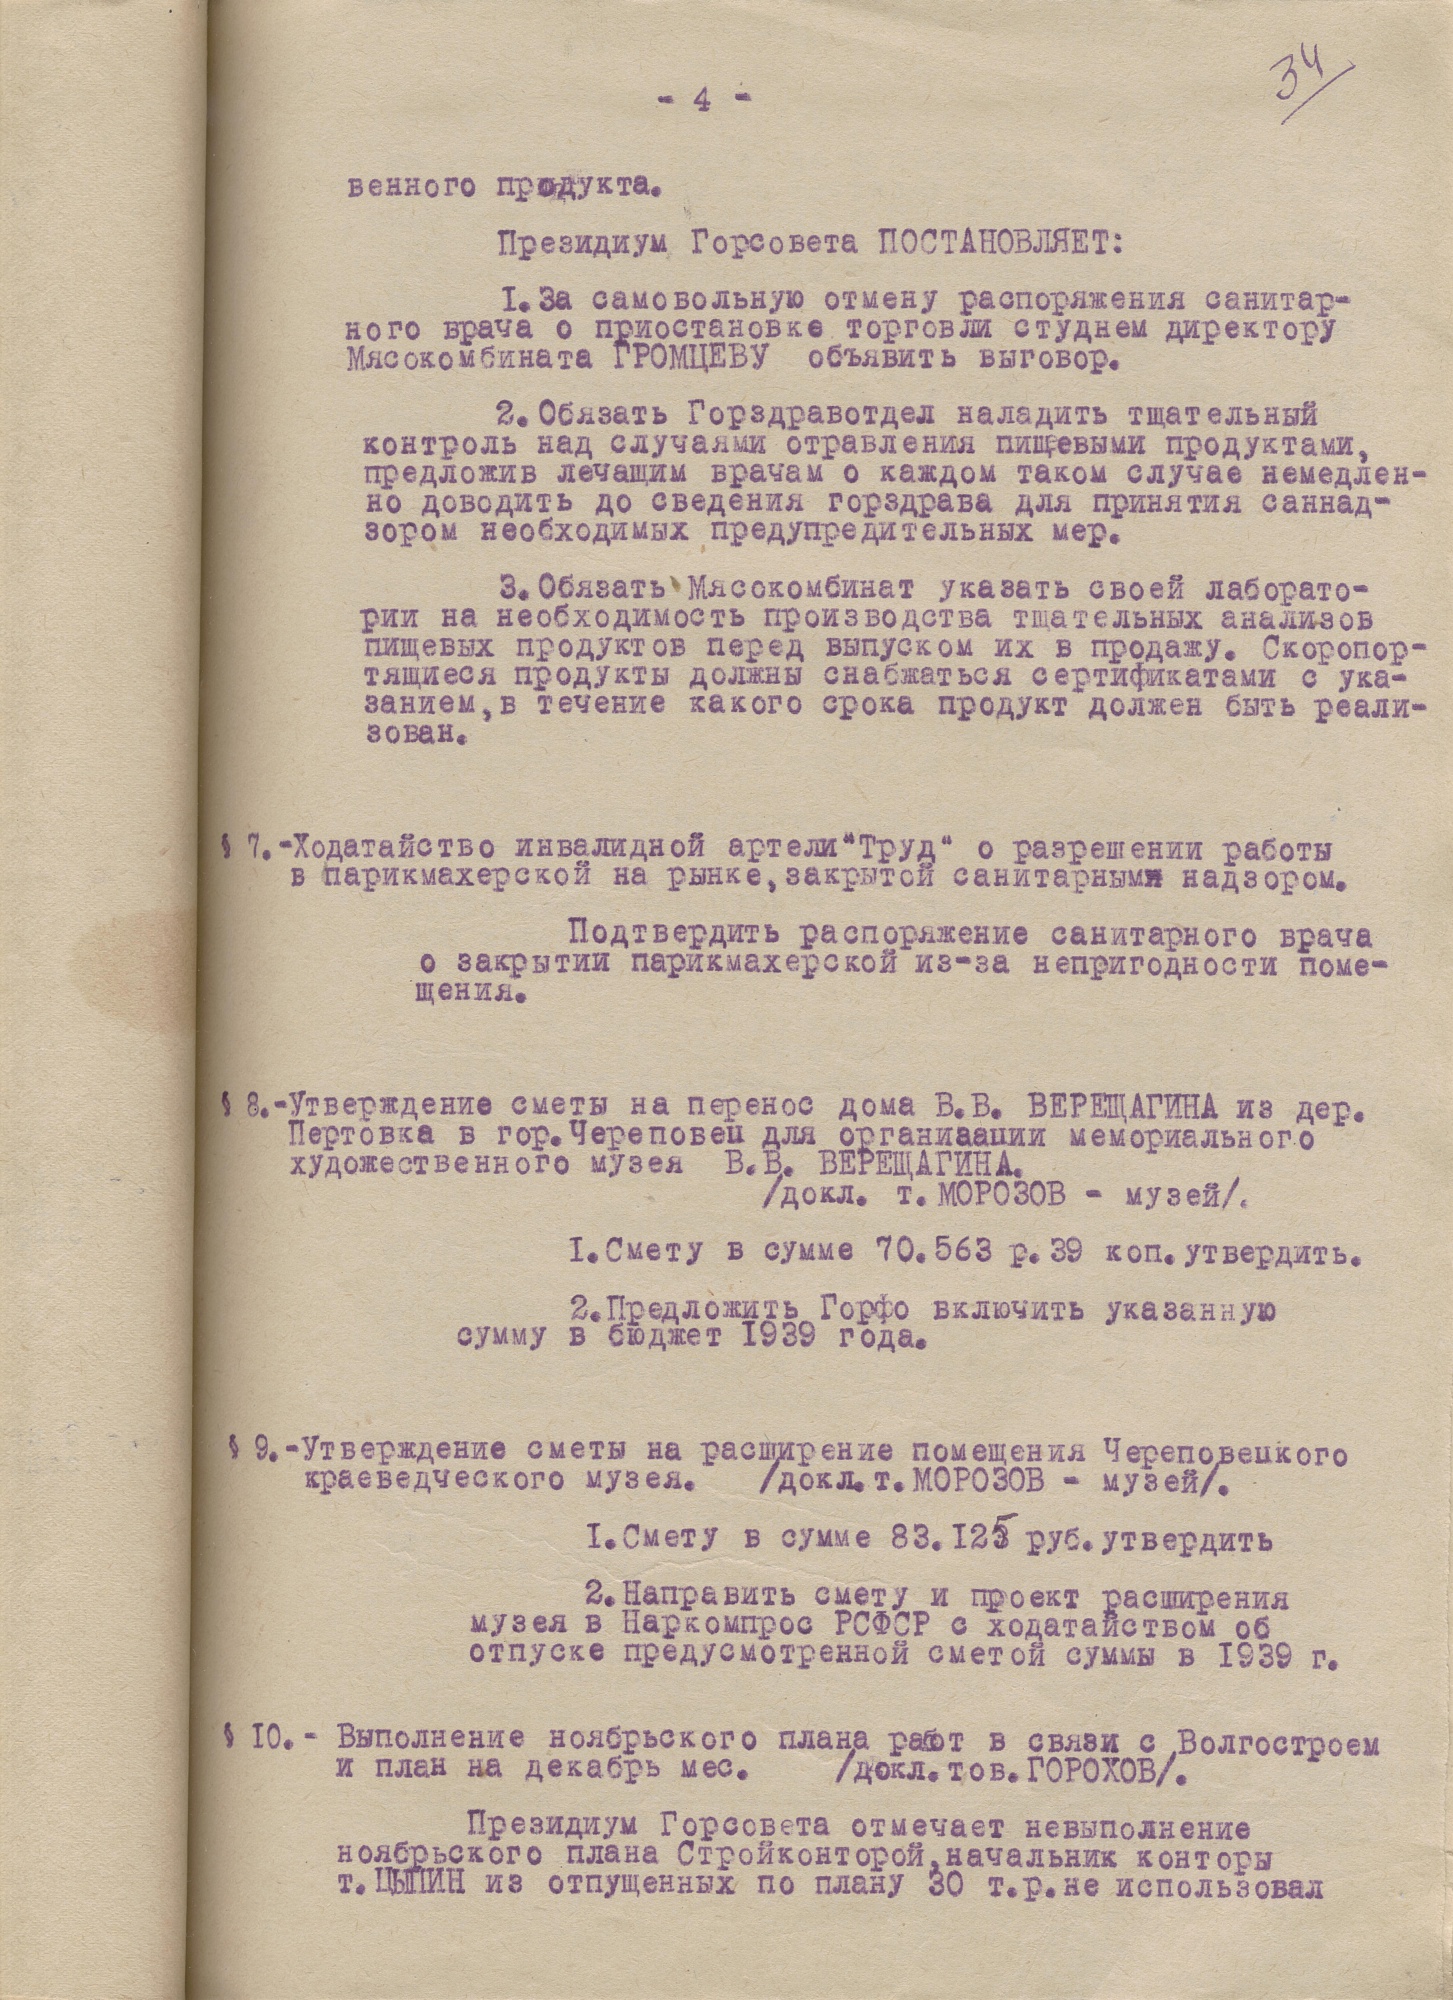 Протокол заседания Президиума Череповецкого городского Совета рабочих, крестьянских и красноармейских депутатов от 28 ноября 1938 года № 54 § 8 